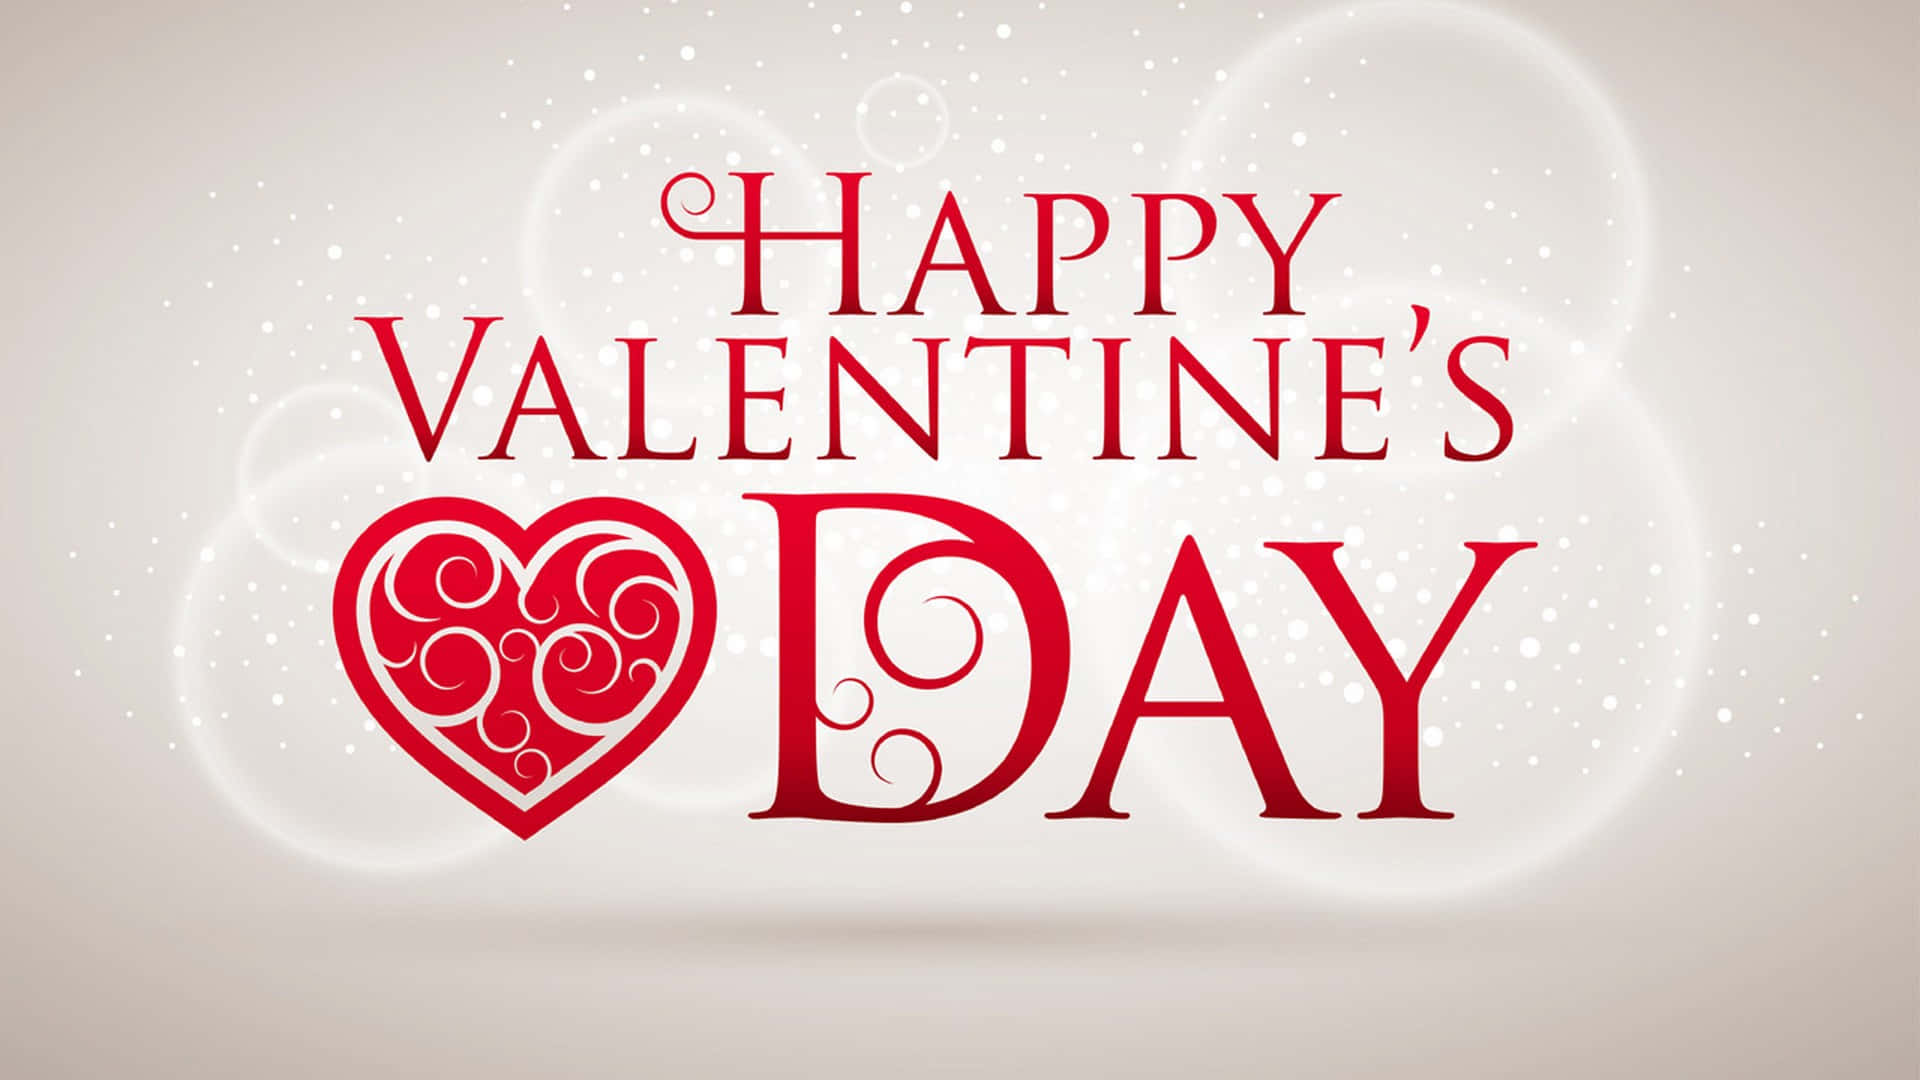 ♥ønsker Dig En Glædelig Valentinsdag!